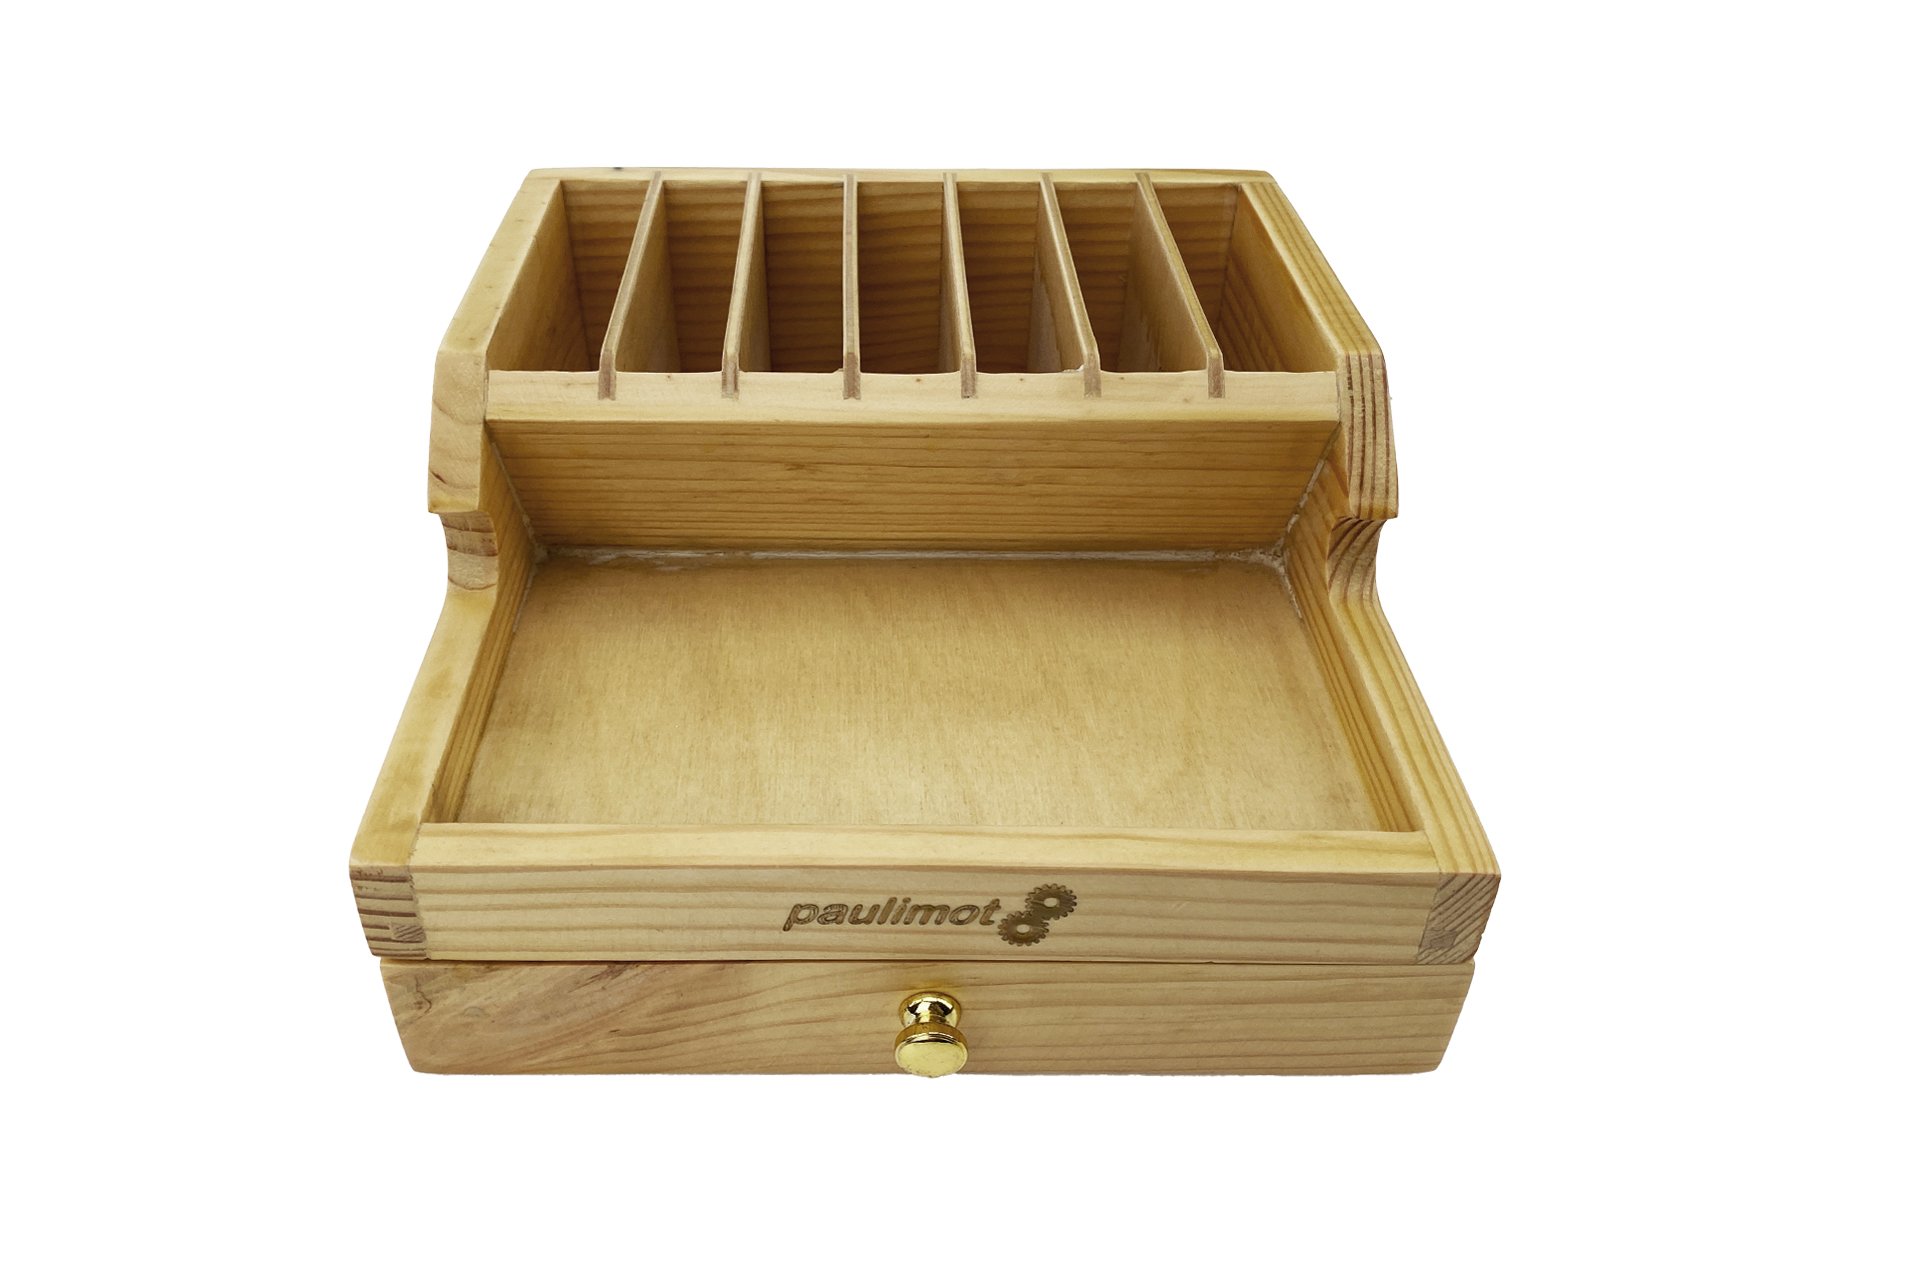 Sortierkasten / Organizer aus Holz mit Schublade